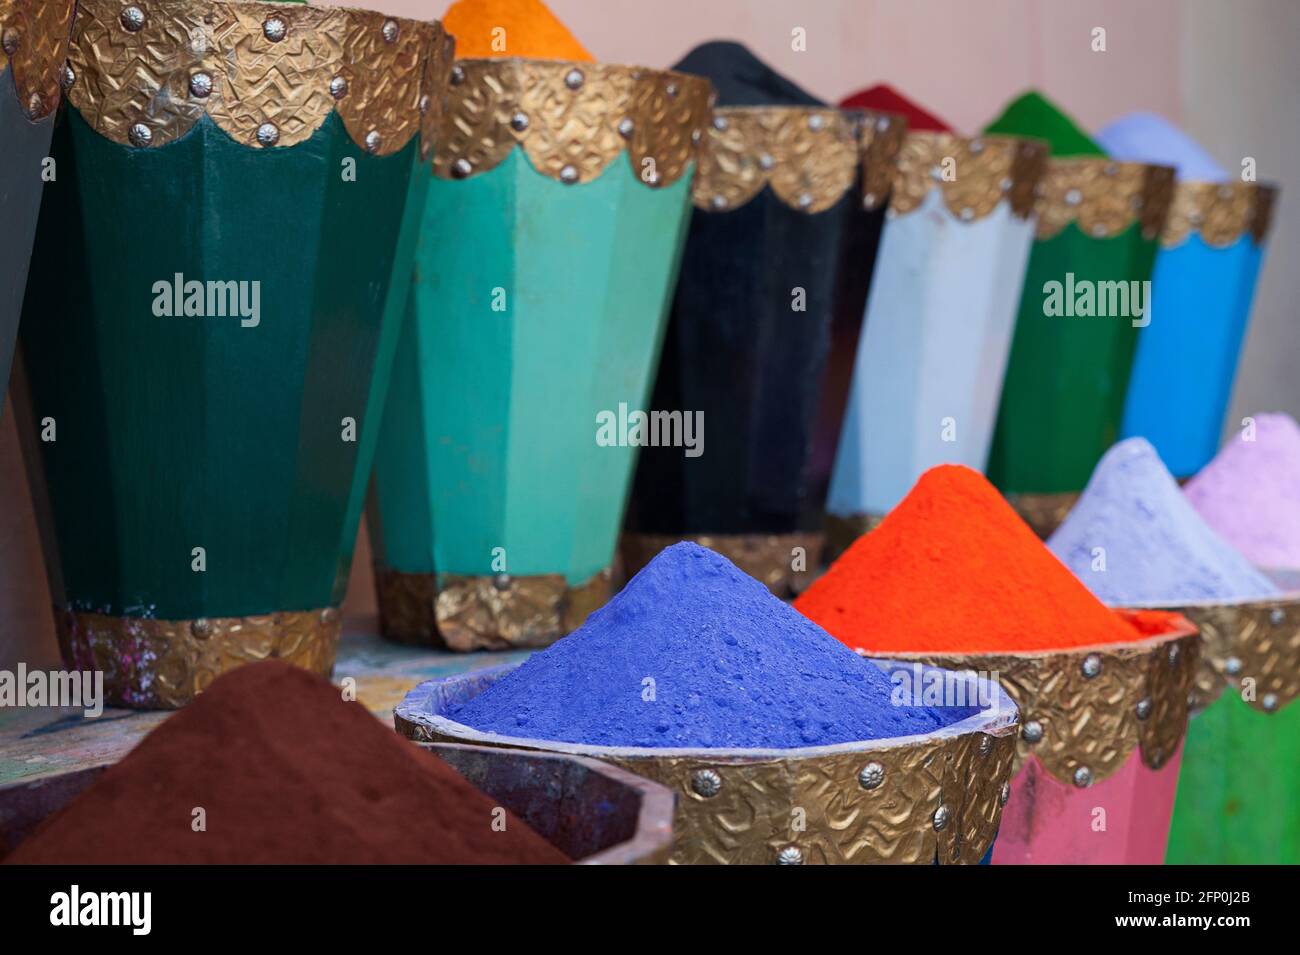 Leuchtendes, farbenfrohes Pigmentpulver oder typischer Mineralfarbstoff fein gemahlen und in robusten traditionellen Holzkisten in der Medina gelagert Stockfoto